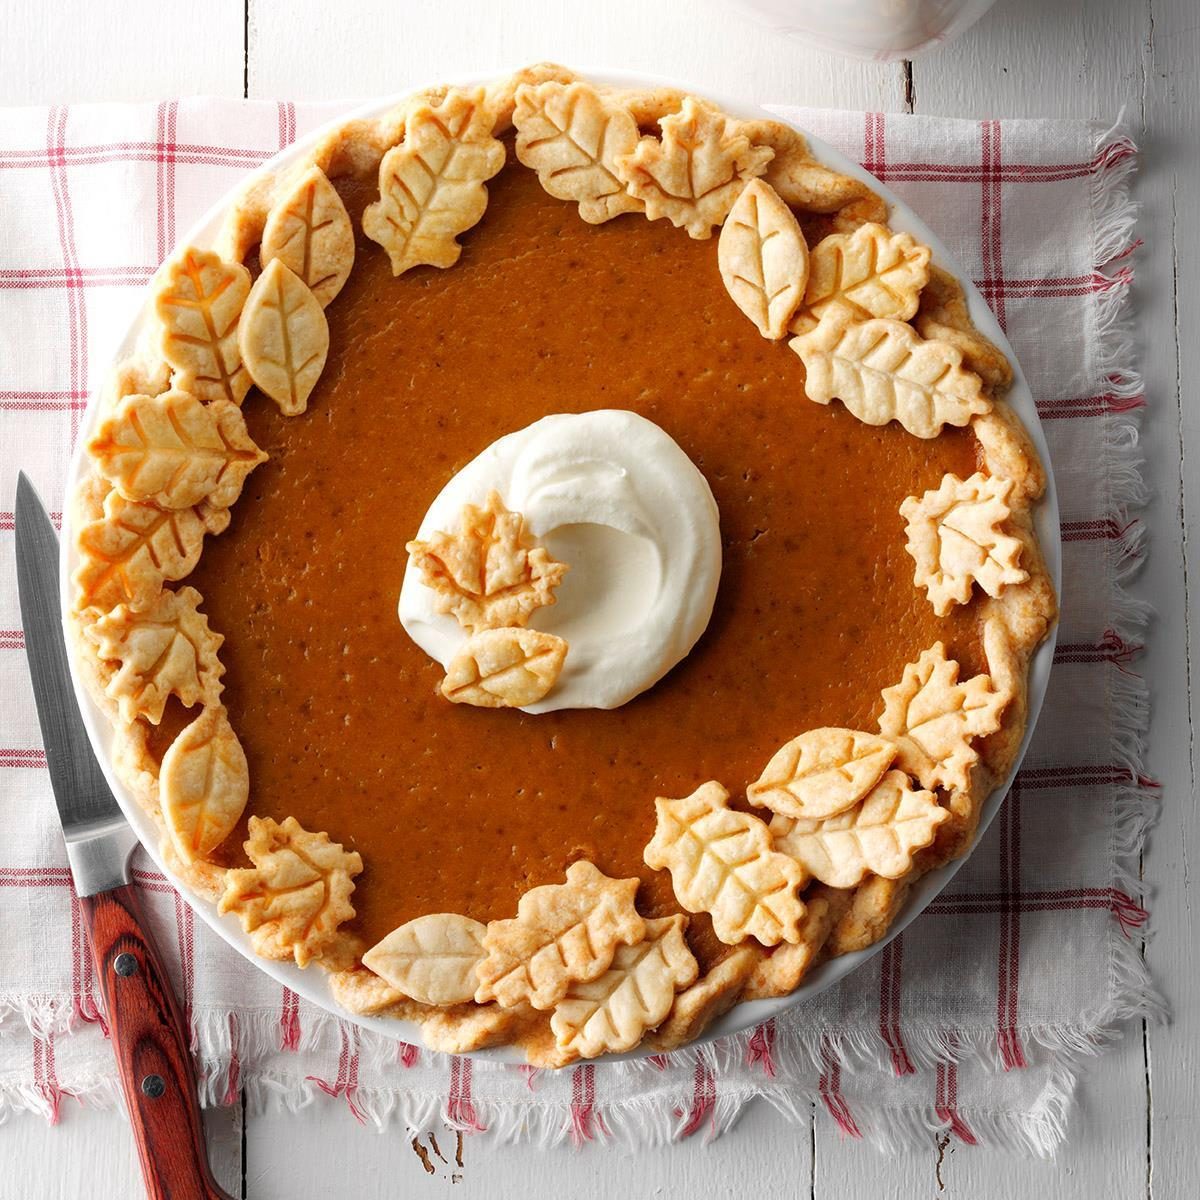 Classic Pumpkin Pie Recipe: How to Make It